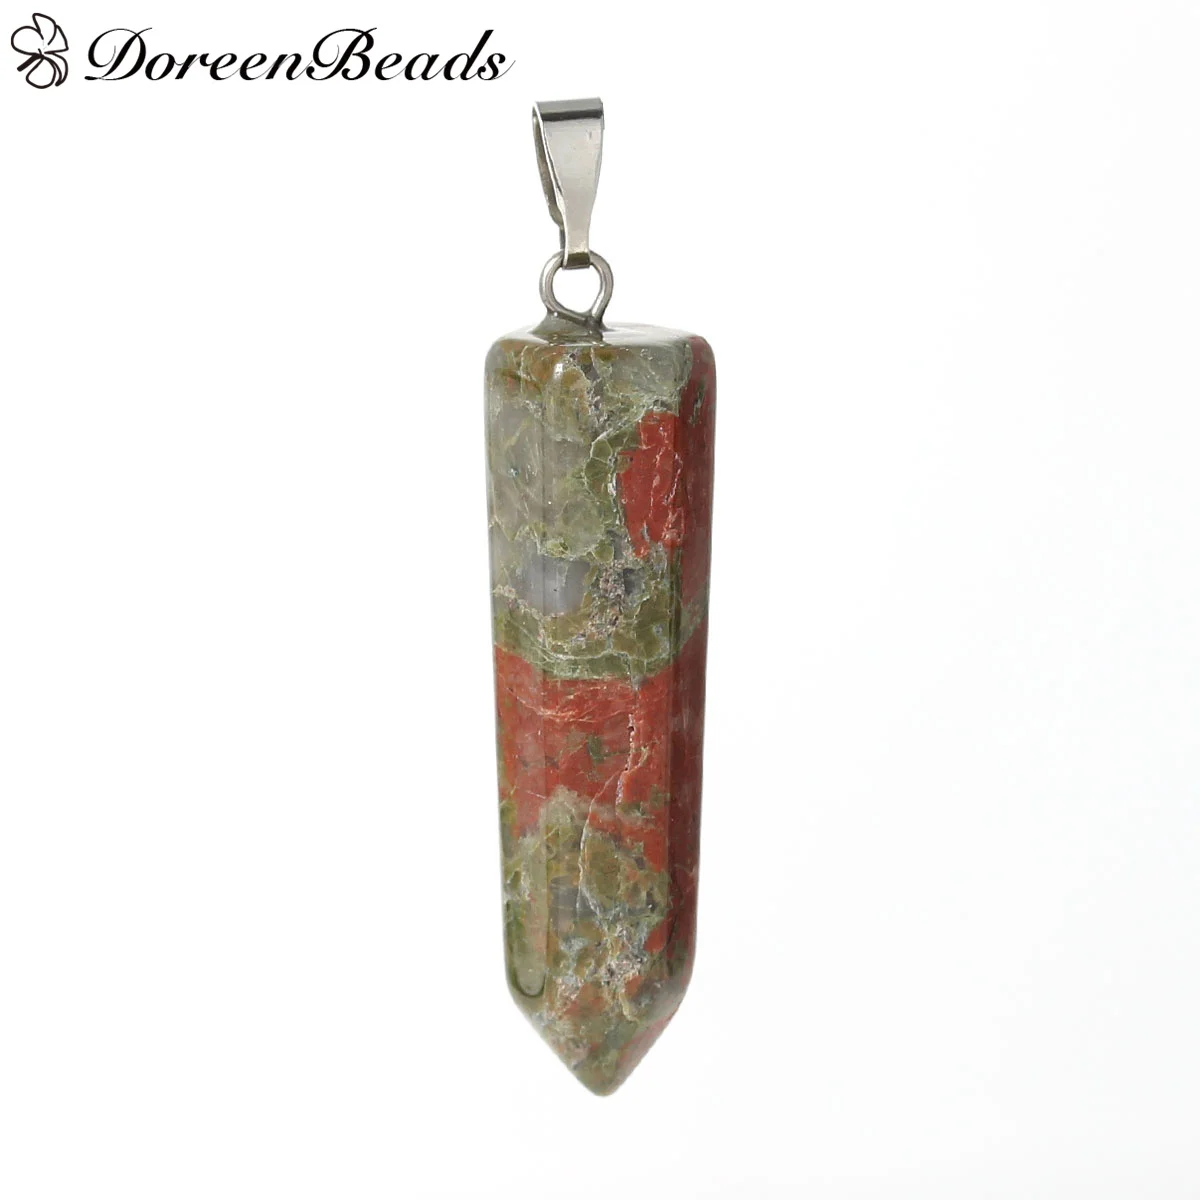 Создан Unakite (натуральный) чакра драгоценный камень подвески серебряный тон красно-коричневый 41 мм (5/8 ") x 10 мм (3/8 "), цельнокроеное платье